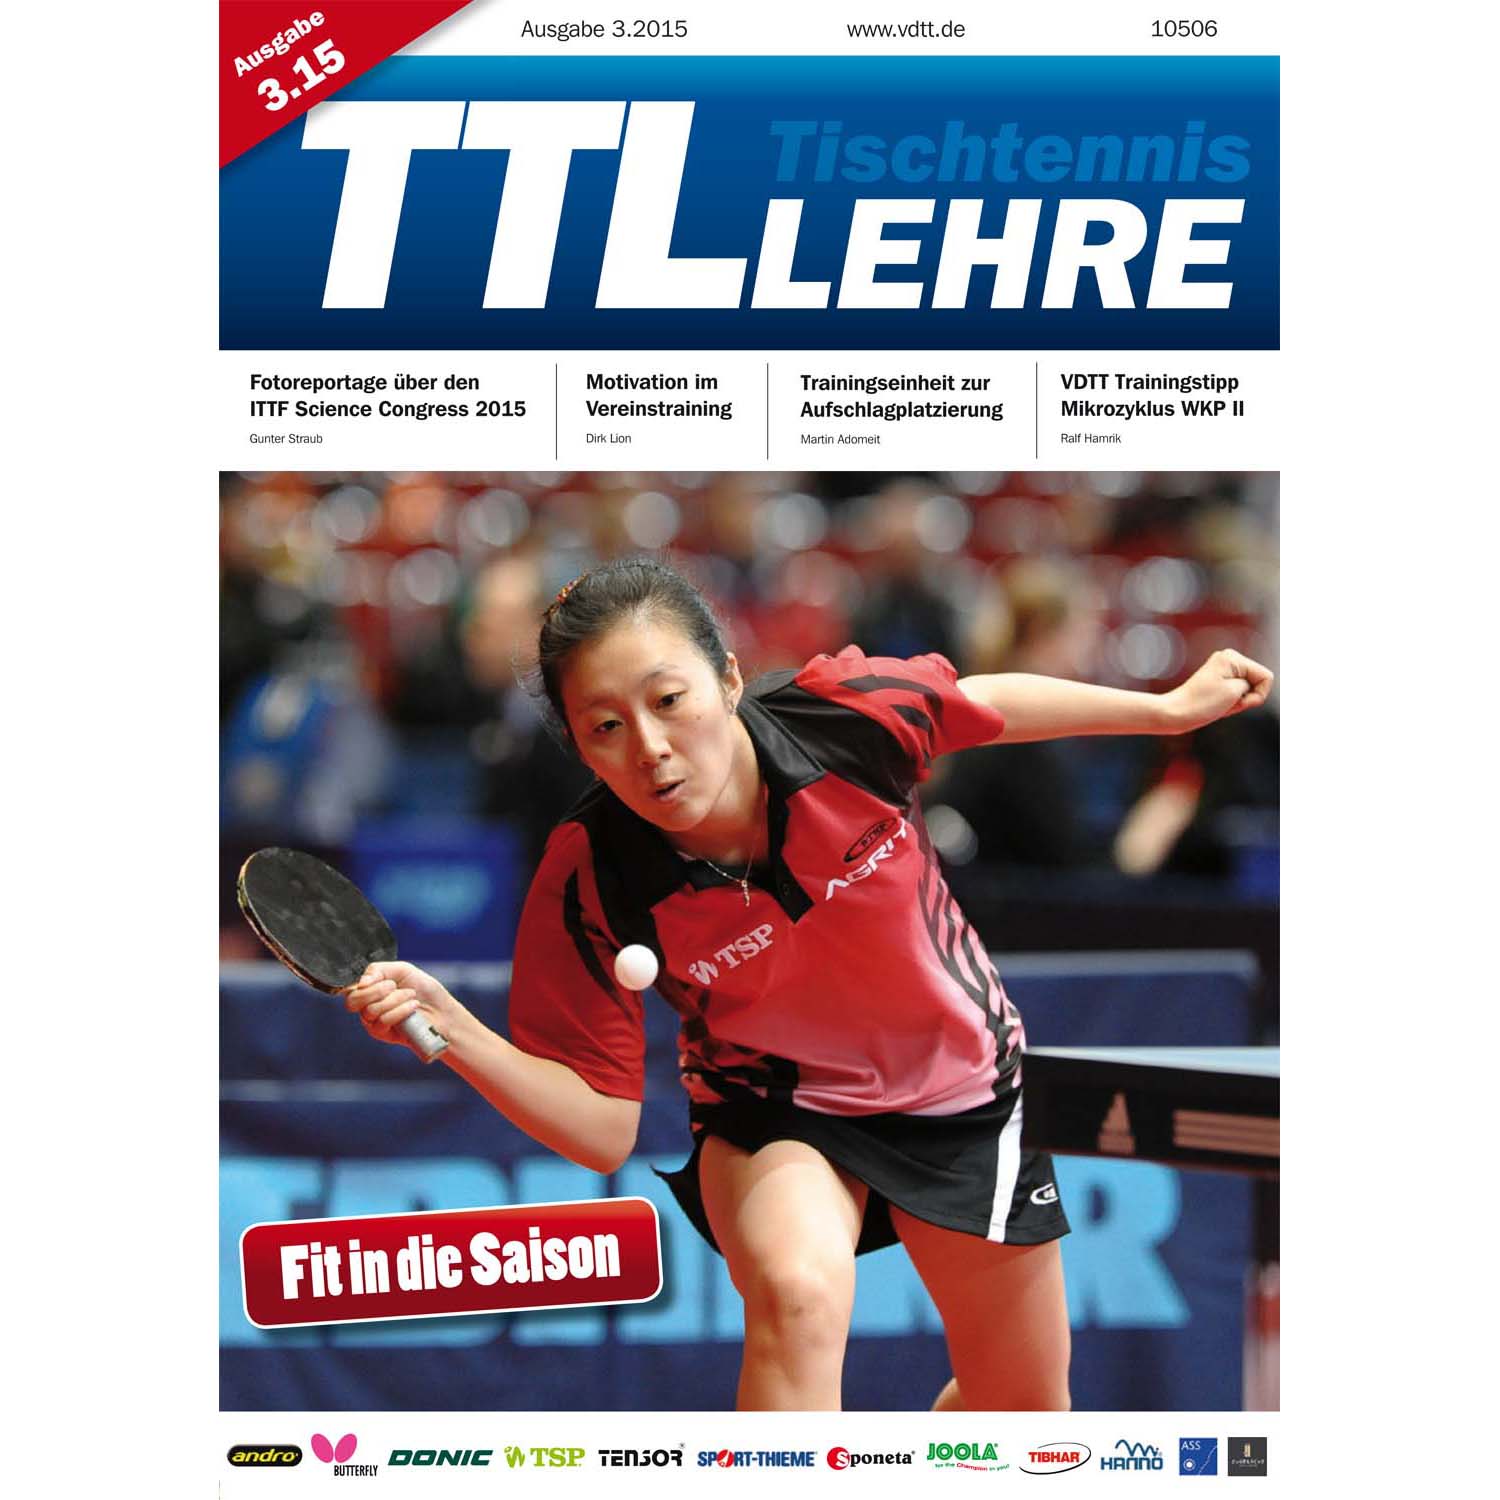 VDTT-Zeitschrift Tischtennislehre - Ausgabe: 2015-03